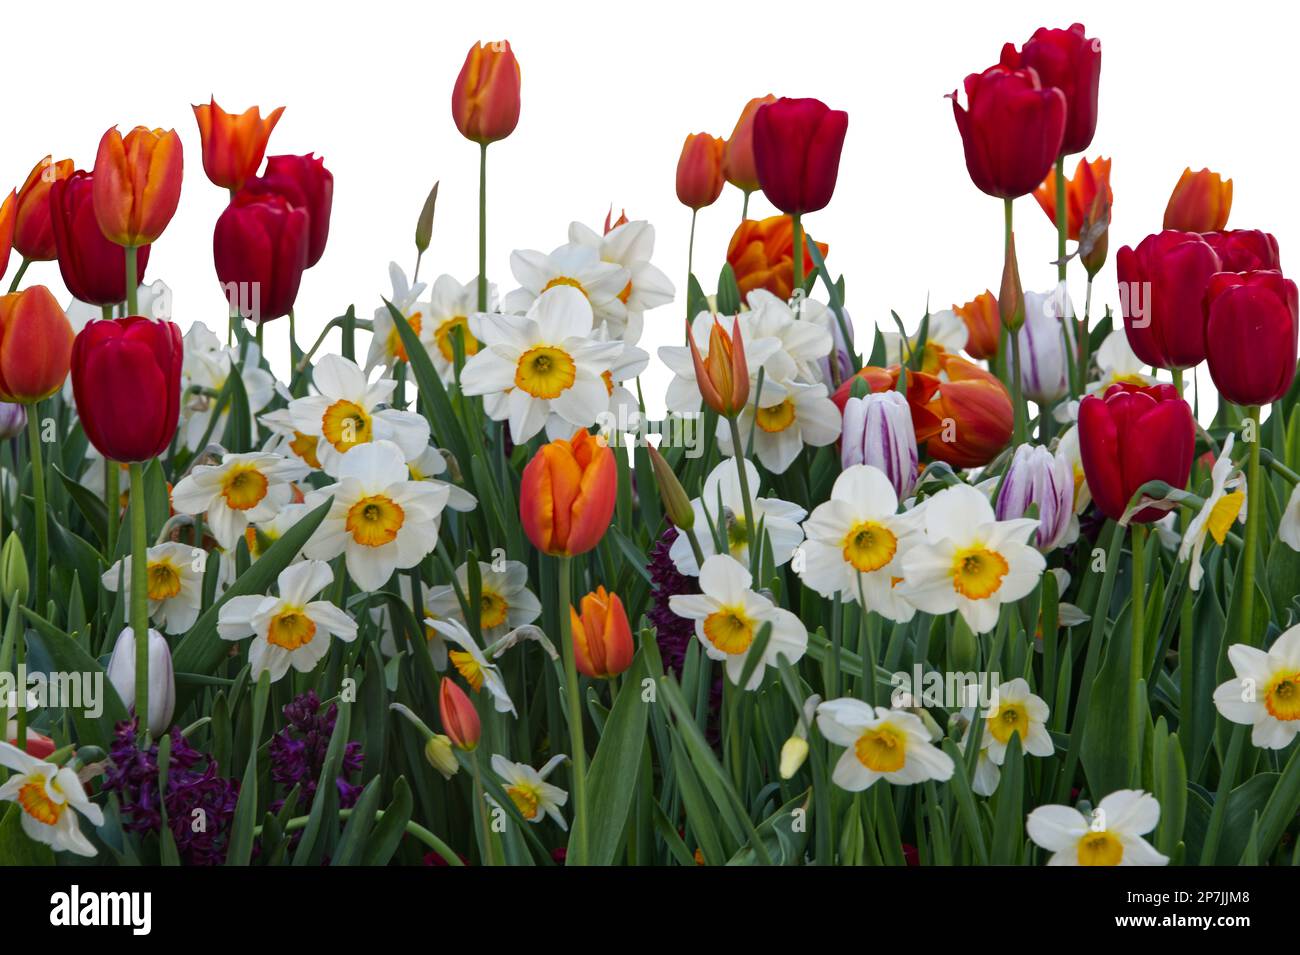 fleurs de prairie comme tulipes et narcisse dans diverses couleurs Banque D'Images